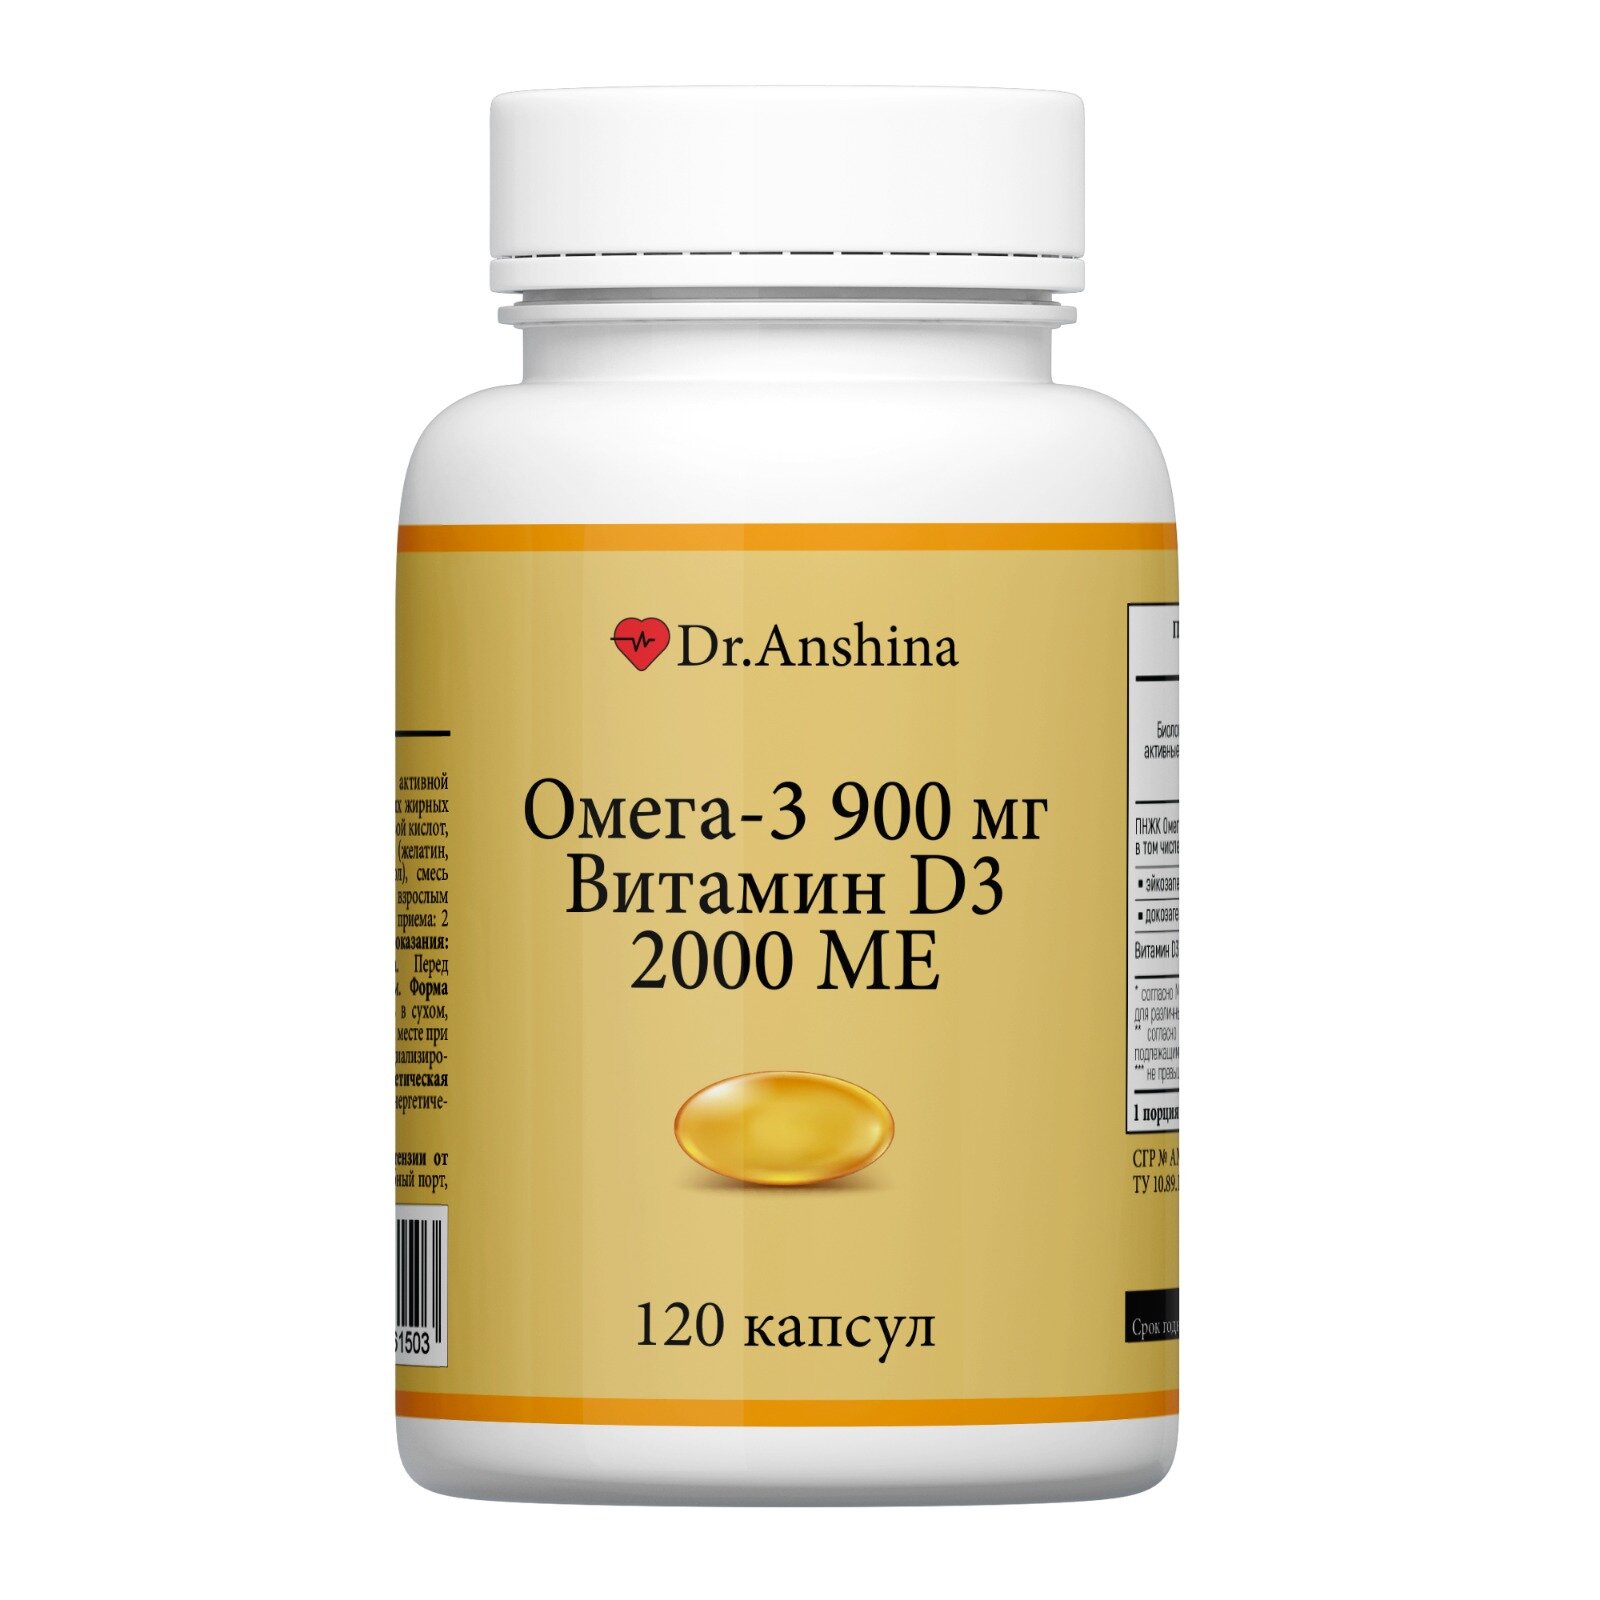 Омега-3 900 mg и Витамин D3 2000 ME